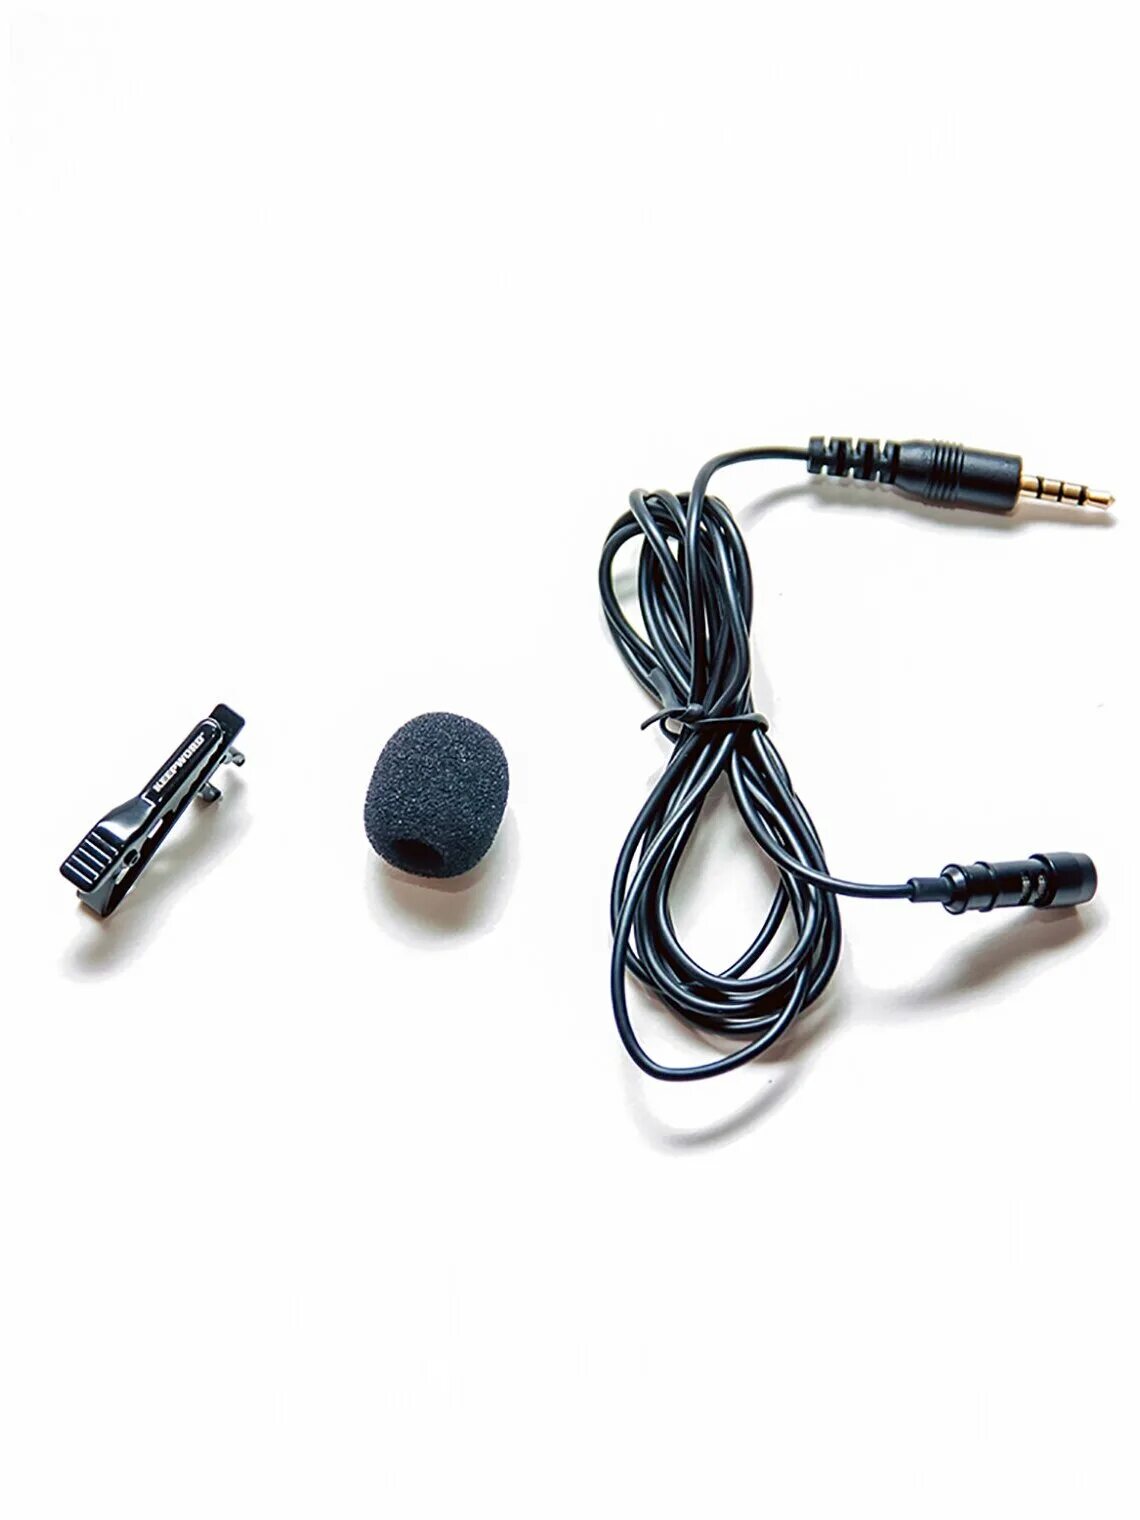 Дешевый микро. Петличный микрофон k9. Петличный микрофон 3,5. Петличный микрофон к BT5.0 Audio Pro. Микрофон BT Lightning k9 петличн.